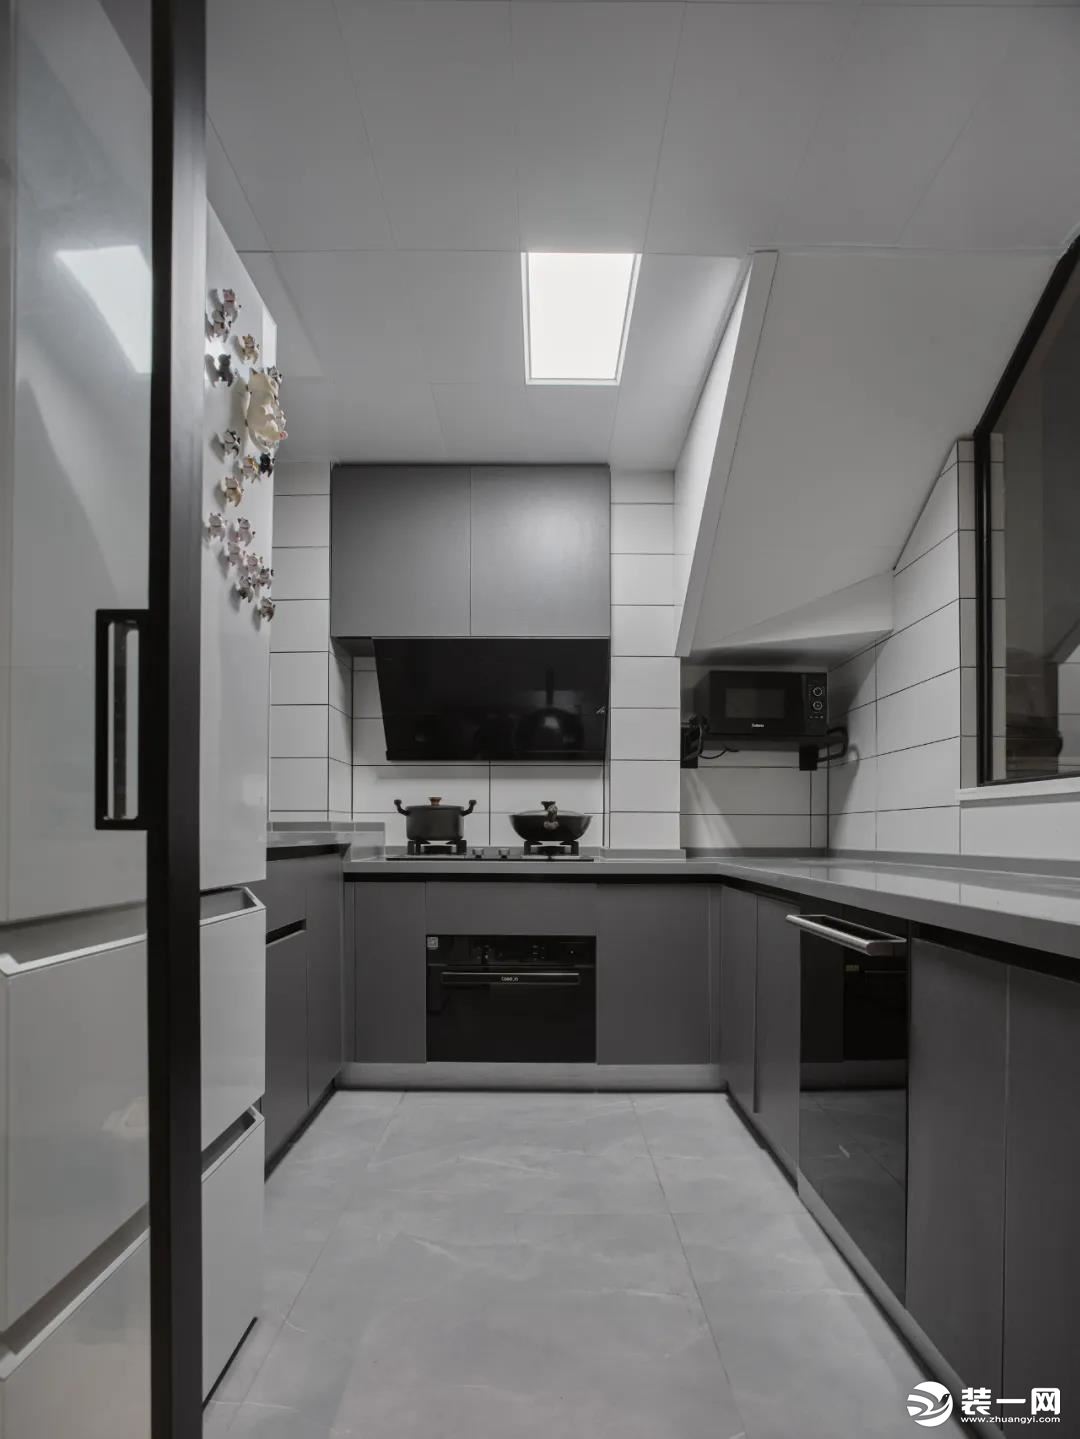 厨房：改造后的厨房空间，采用U型布局，利用率高。墙面白色砖搭配深灰色橱柜简洁利落